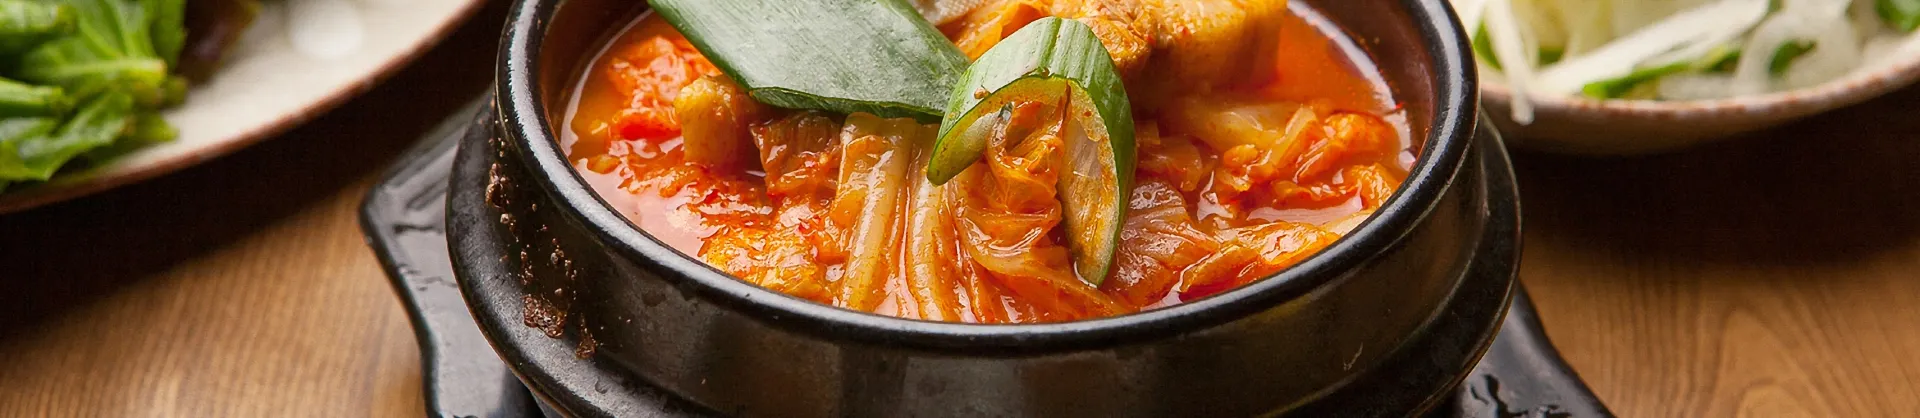 10大韓式風味餐廳